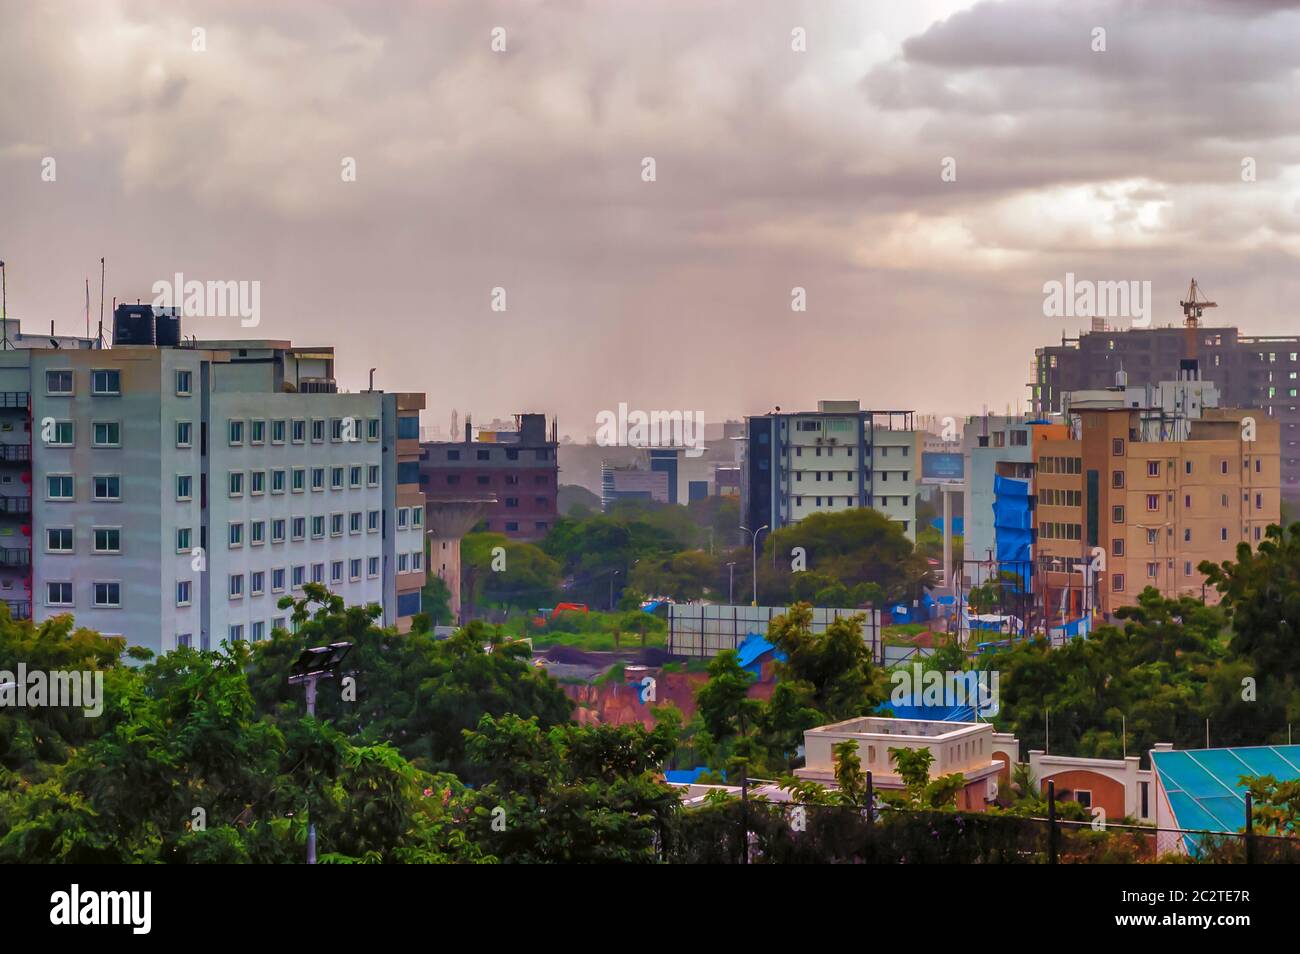 Cielo pomeridiano coperto da oscure nuvole monsoniche sulla città di Hyderabad, Telangana, India. Foto Stock